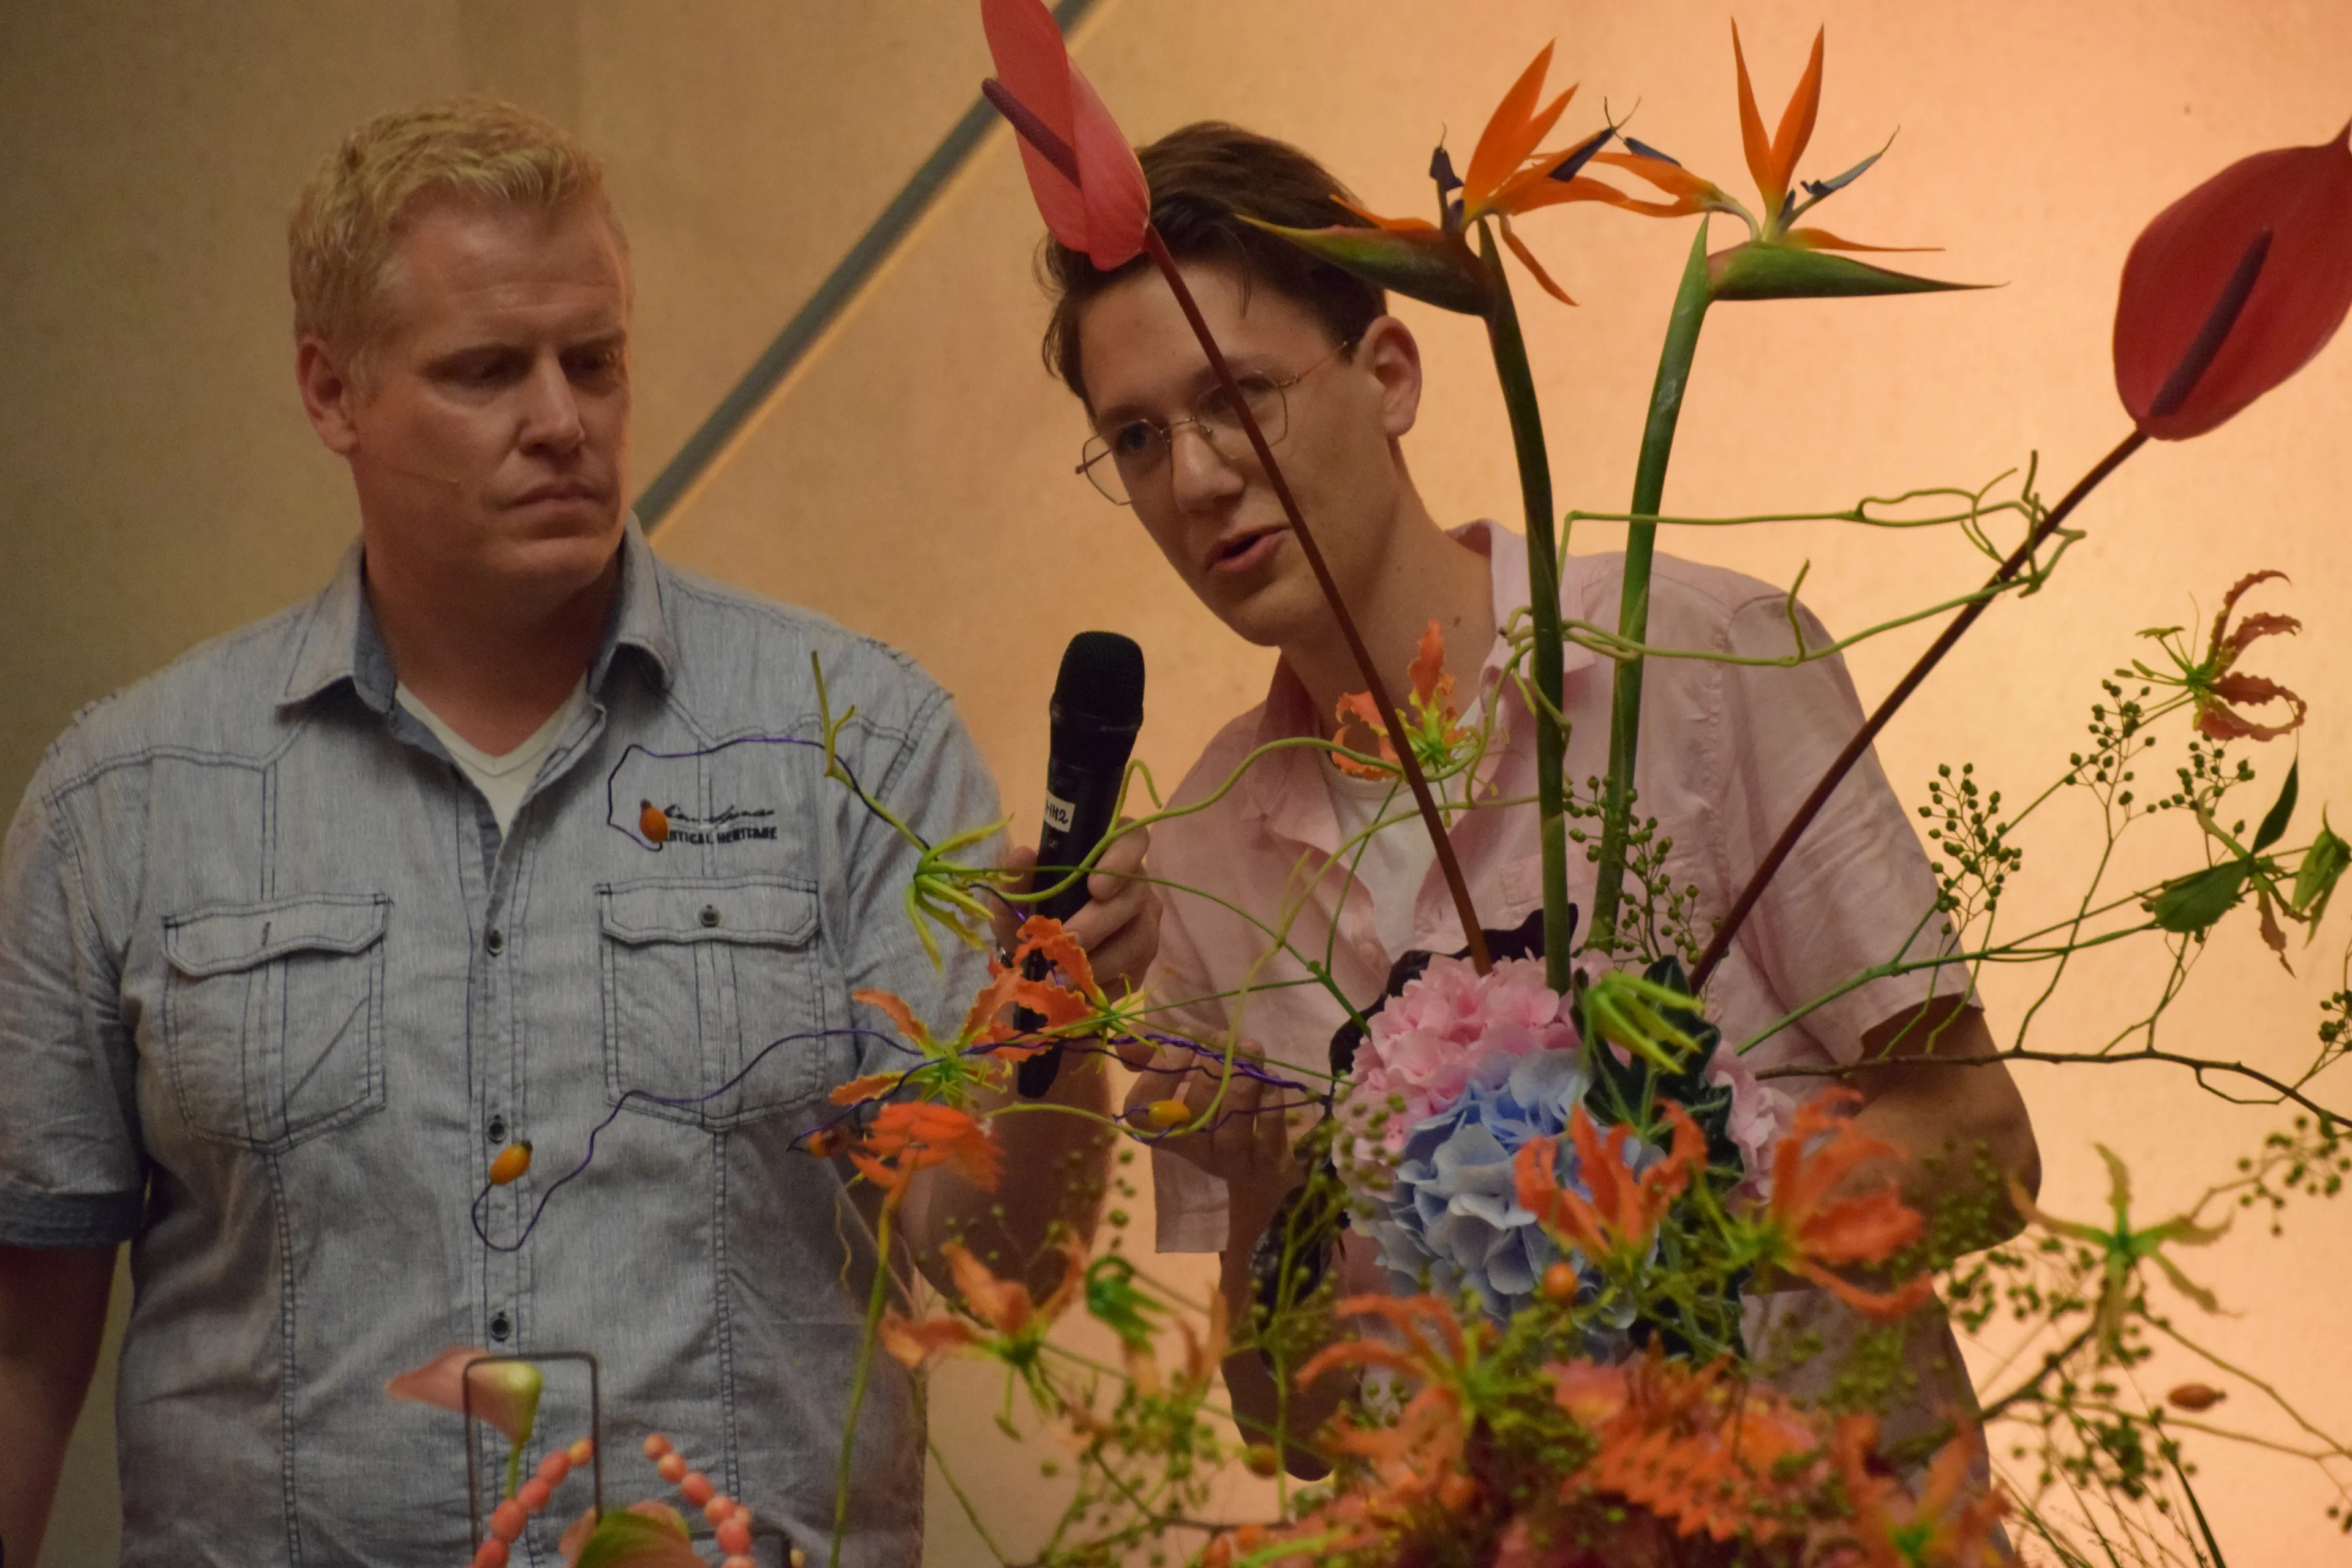 mirko legt het publiek uit waar zijn bloemwerk over gaat en neemt gelijk zijn kans waar om de vbw en de arrangeurs te bedanken voor deze mooie en leerzame ervaring marjanne eikelboom